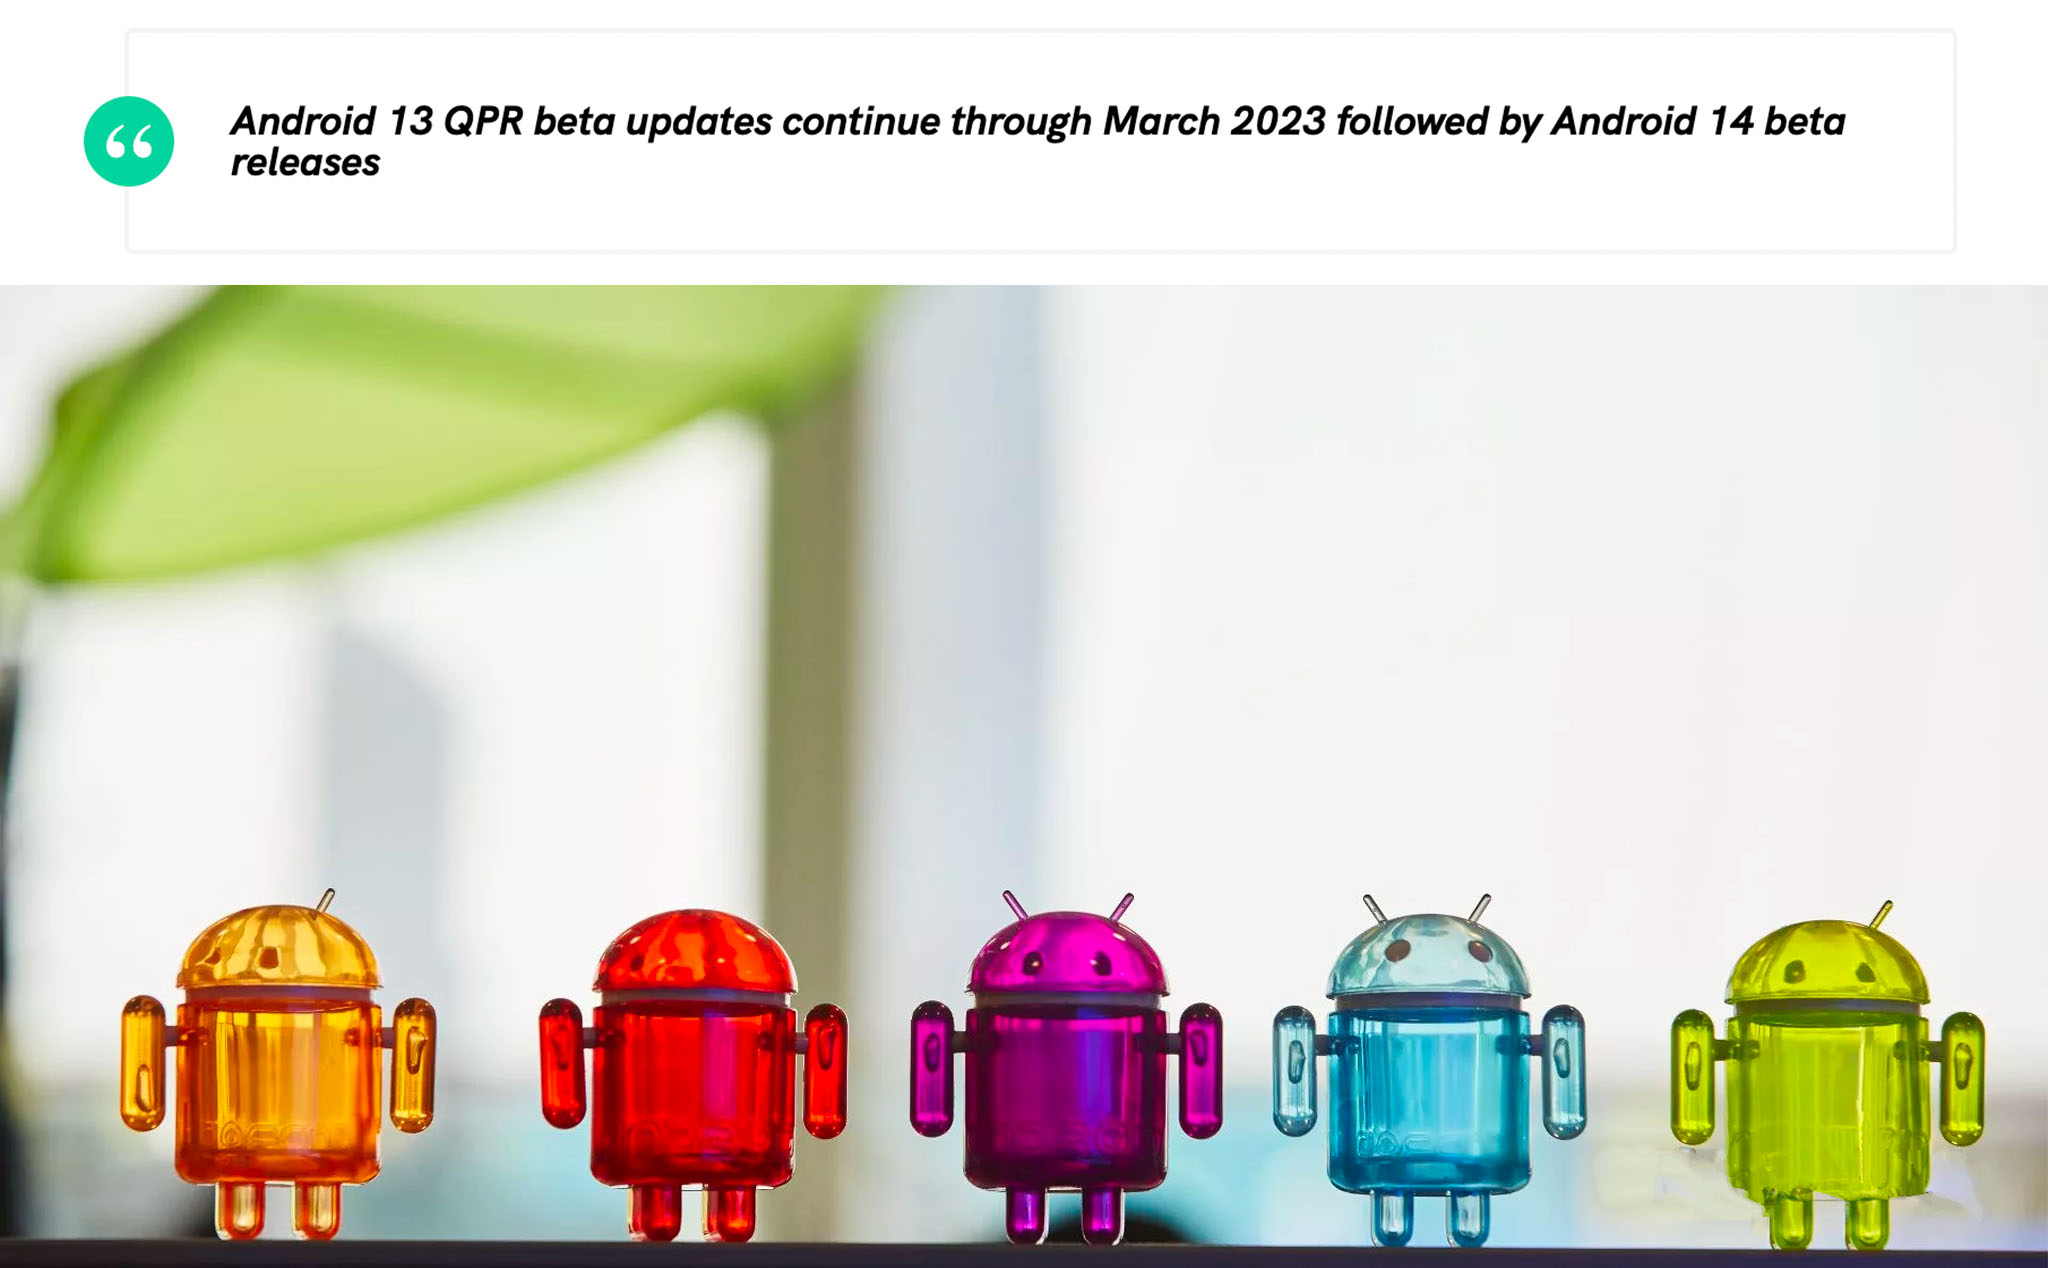 Phiên bản Android 14 beta đầu tiên sẽ được phát hành vào tháng 04/2023